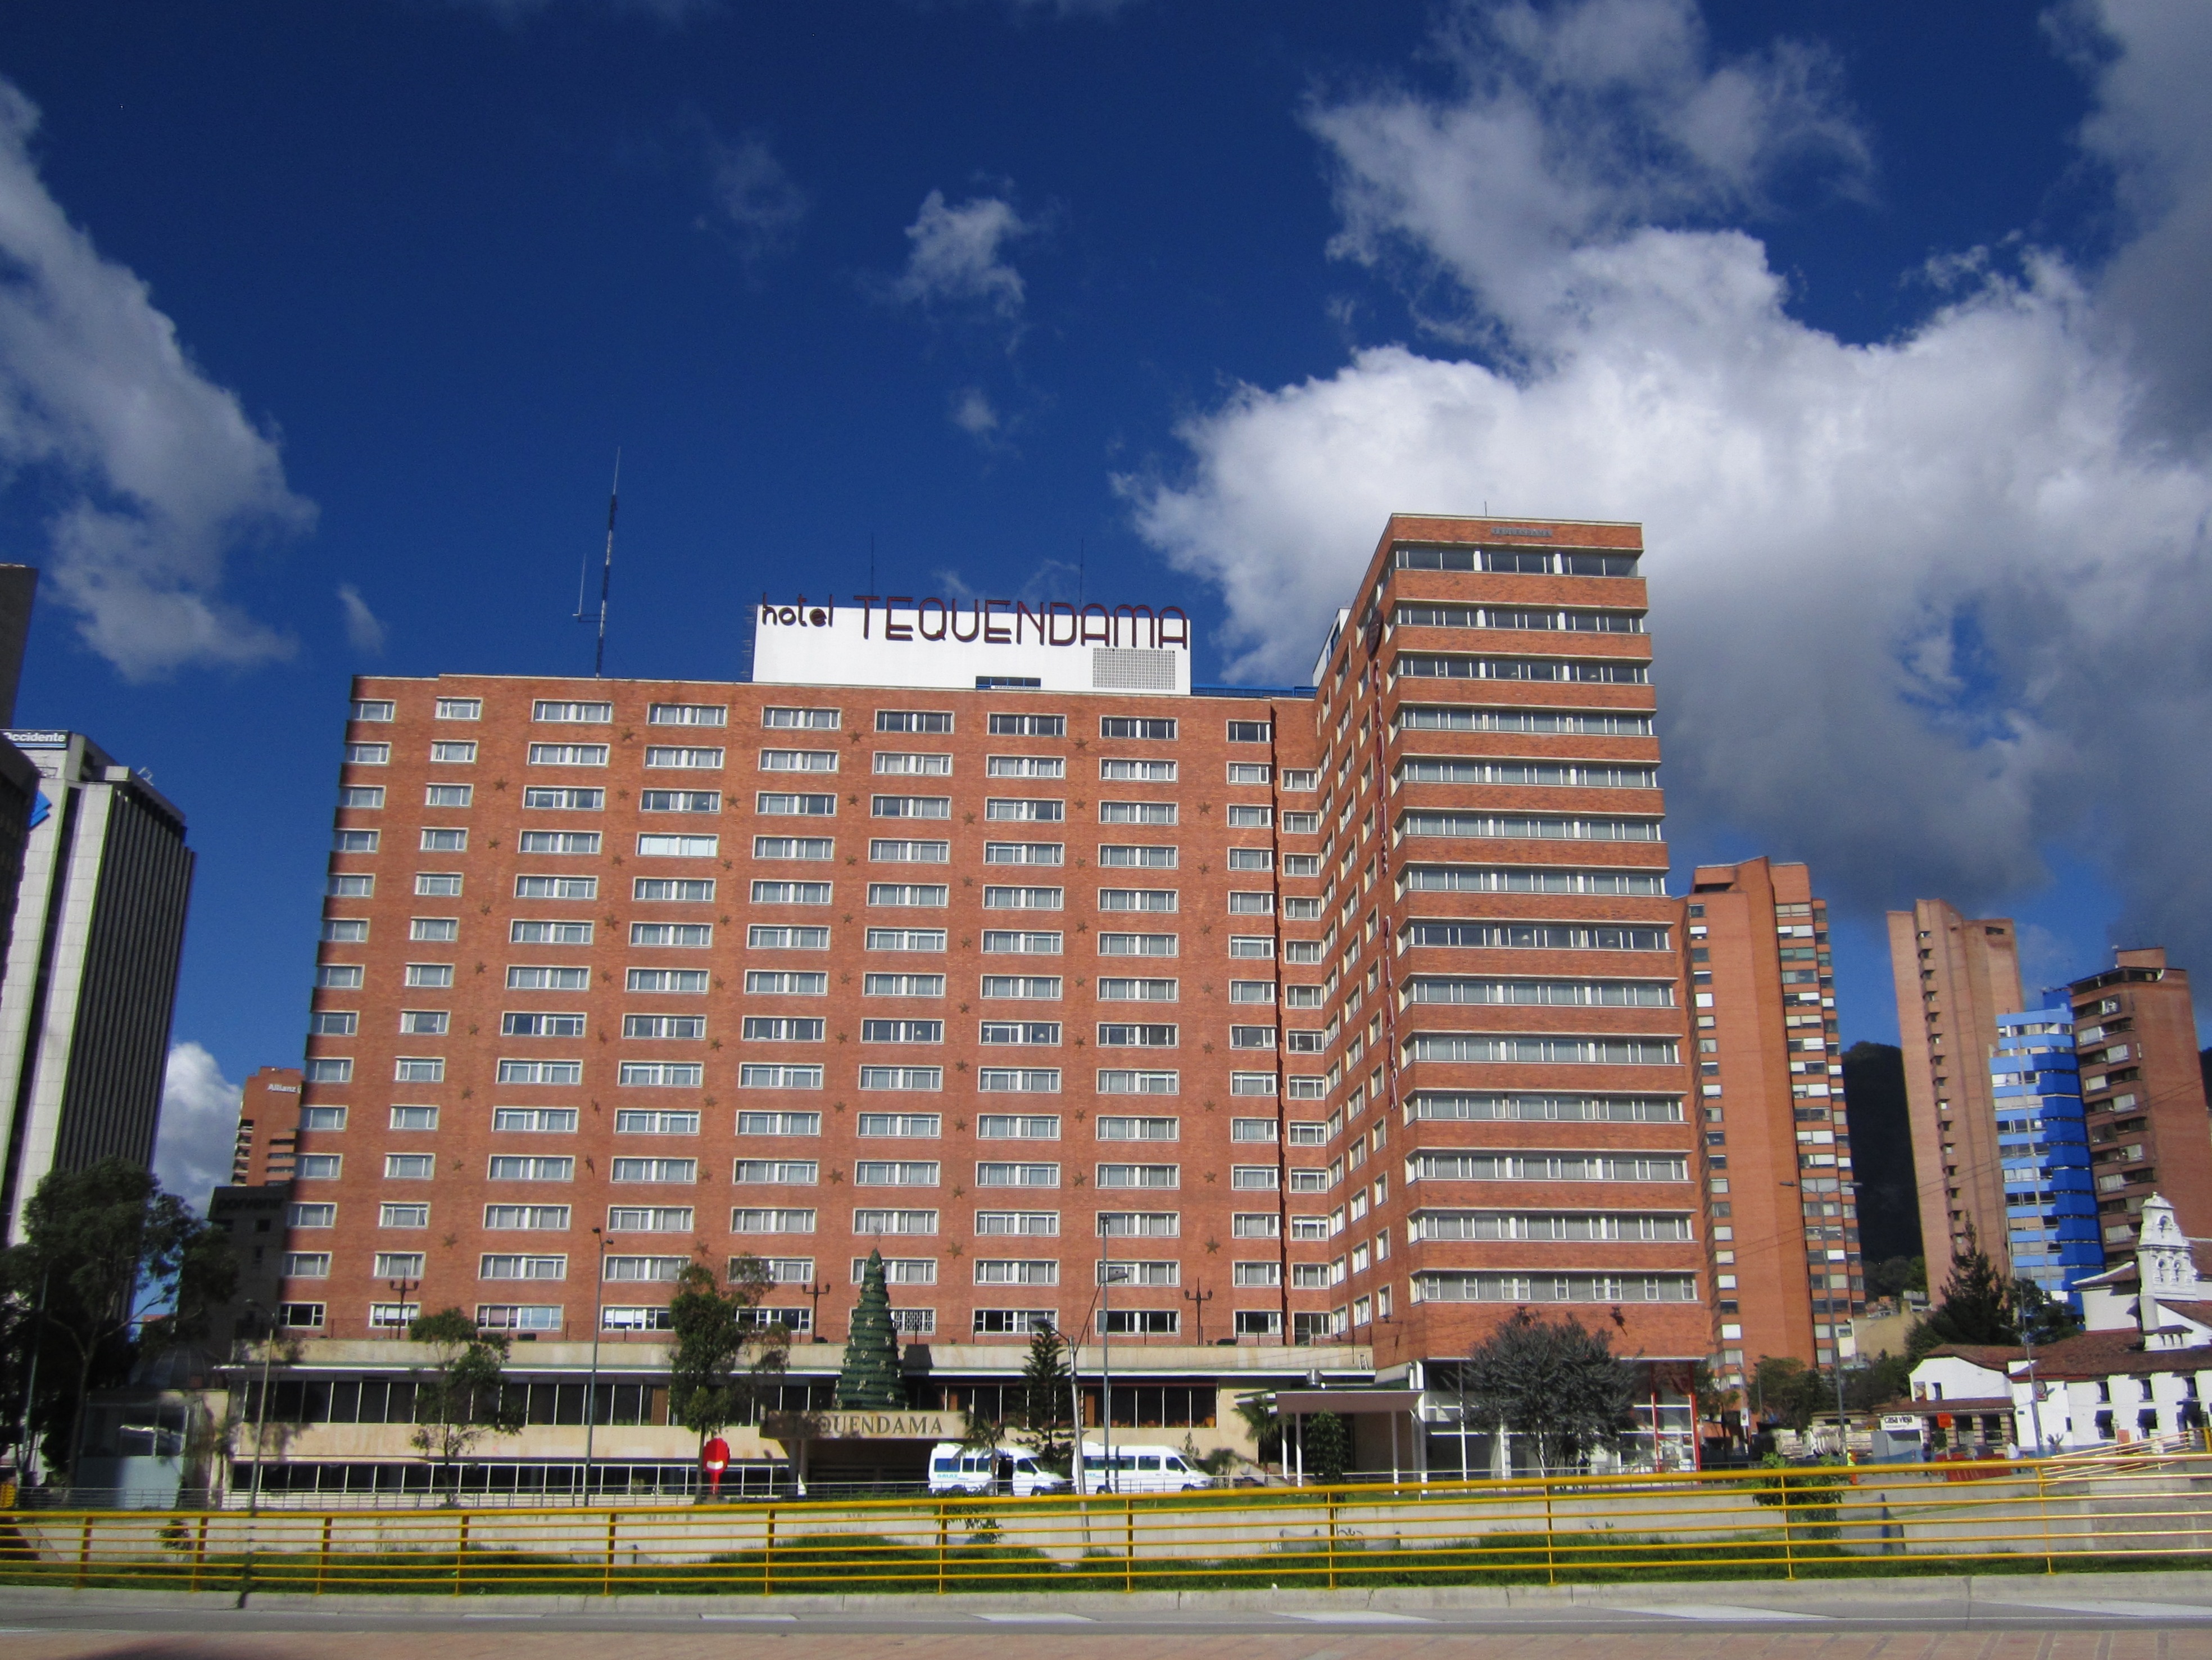 Duque anunció que el Hotel Tequendama, de Bogotá, será adecuado como centro semihospitalario para atender emergencia por el COVID-19, en caso de ser necesario